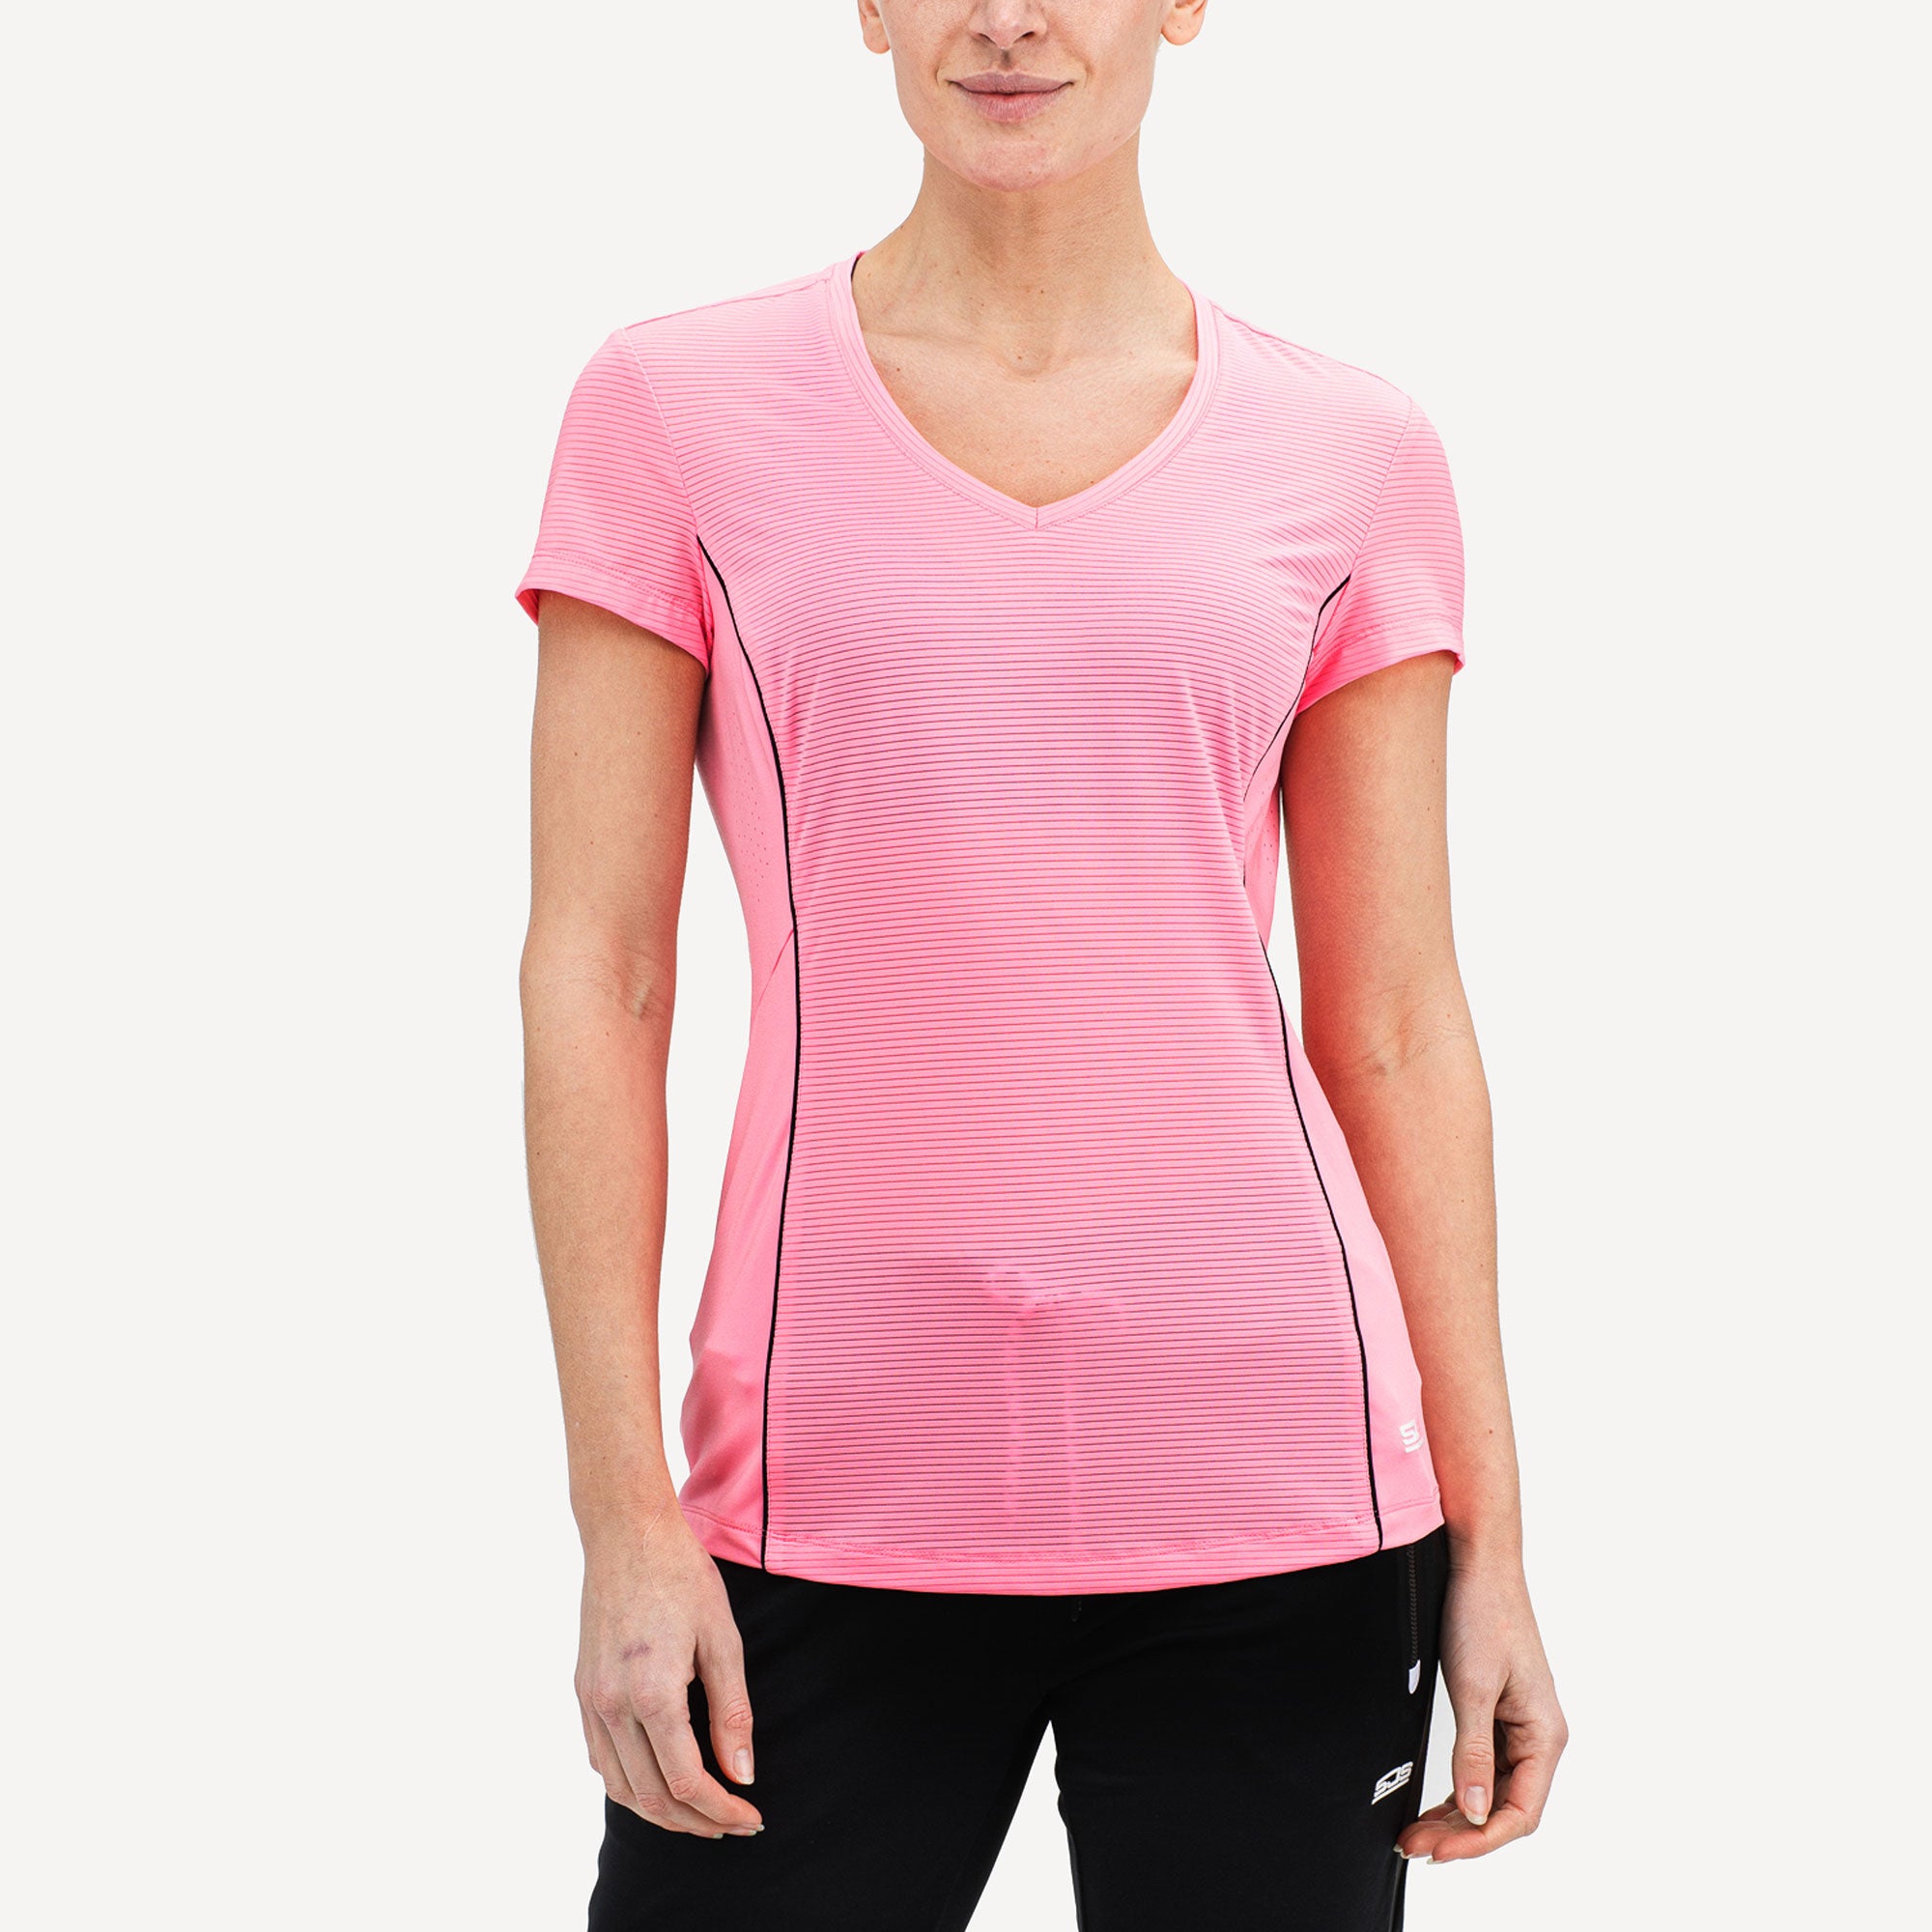 Sjeng Sports Annika Women's Tennis Shirt Pink (1)